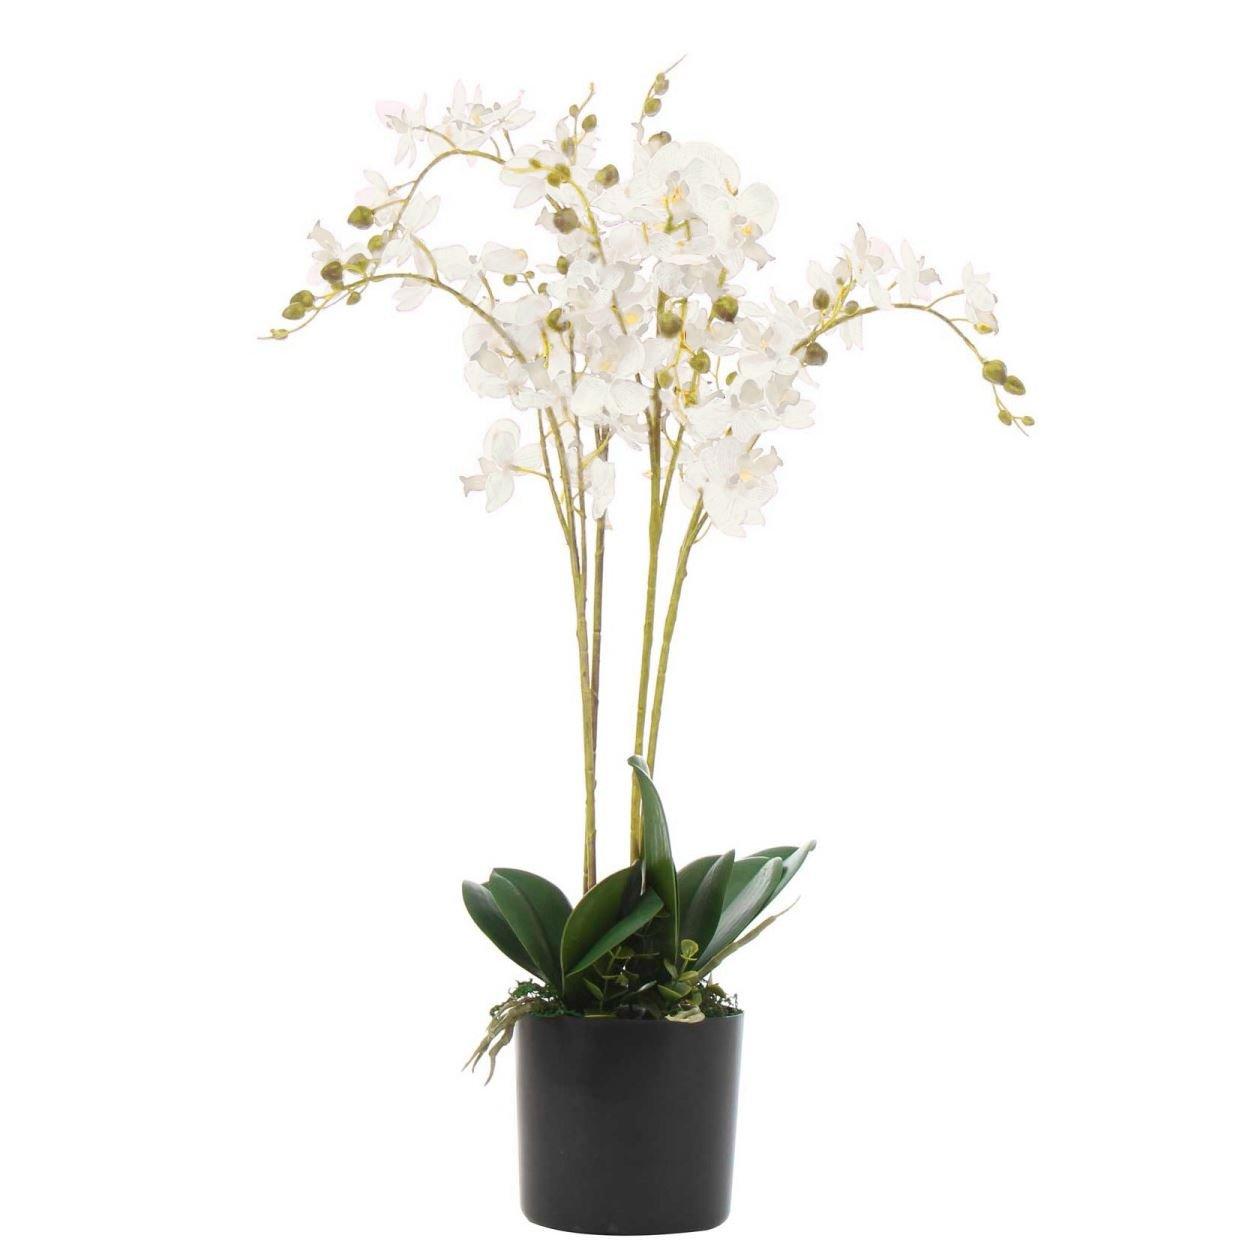 Orchids Floral Arrangement in Pot black,white